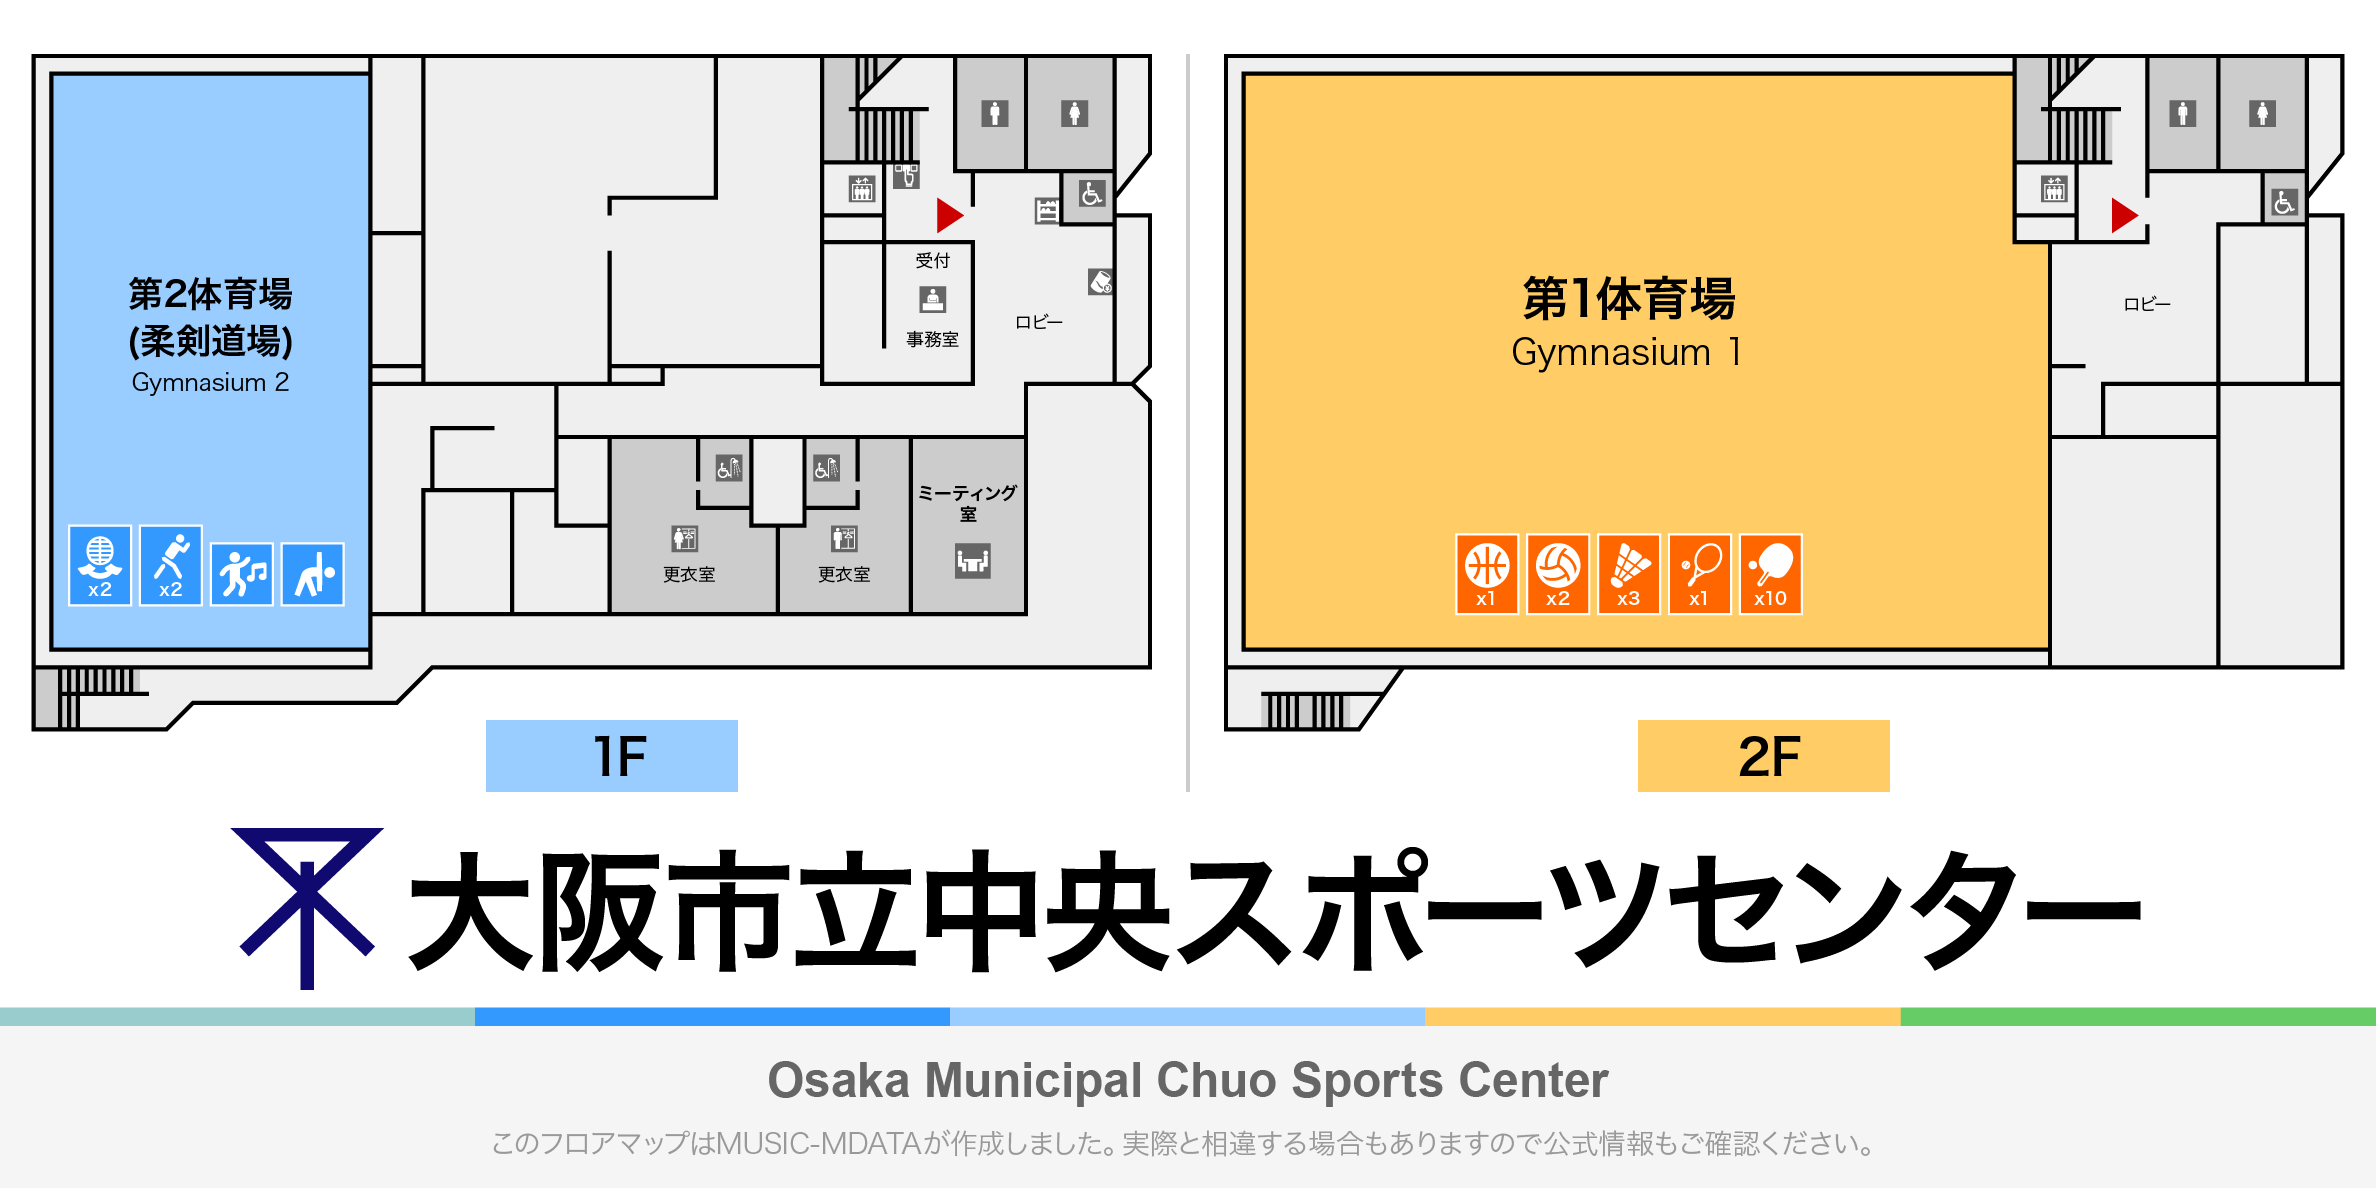 大阪市立中央スポーツセンターのフロアマップ・体育館